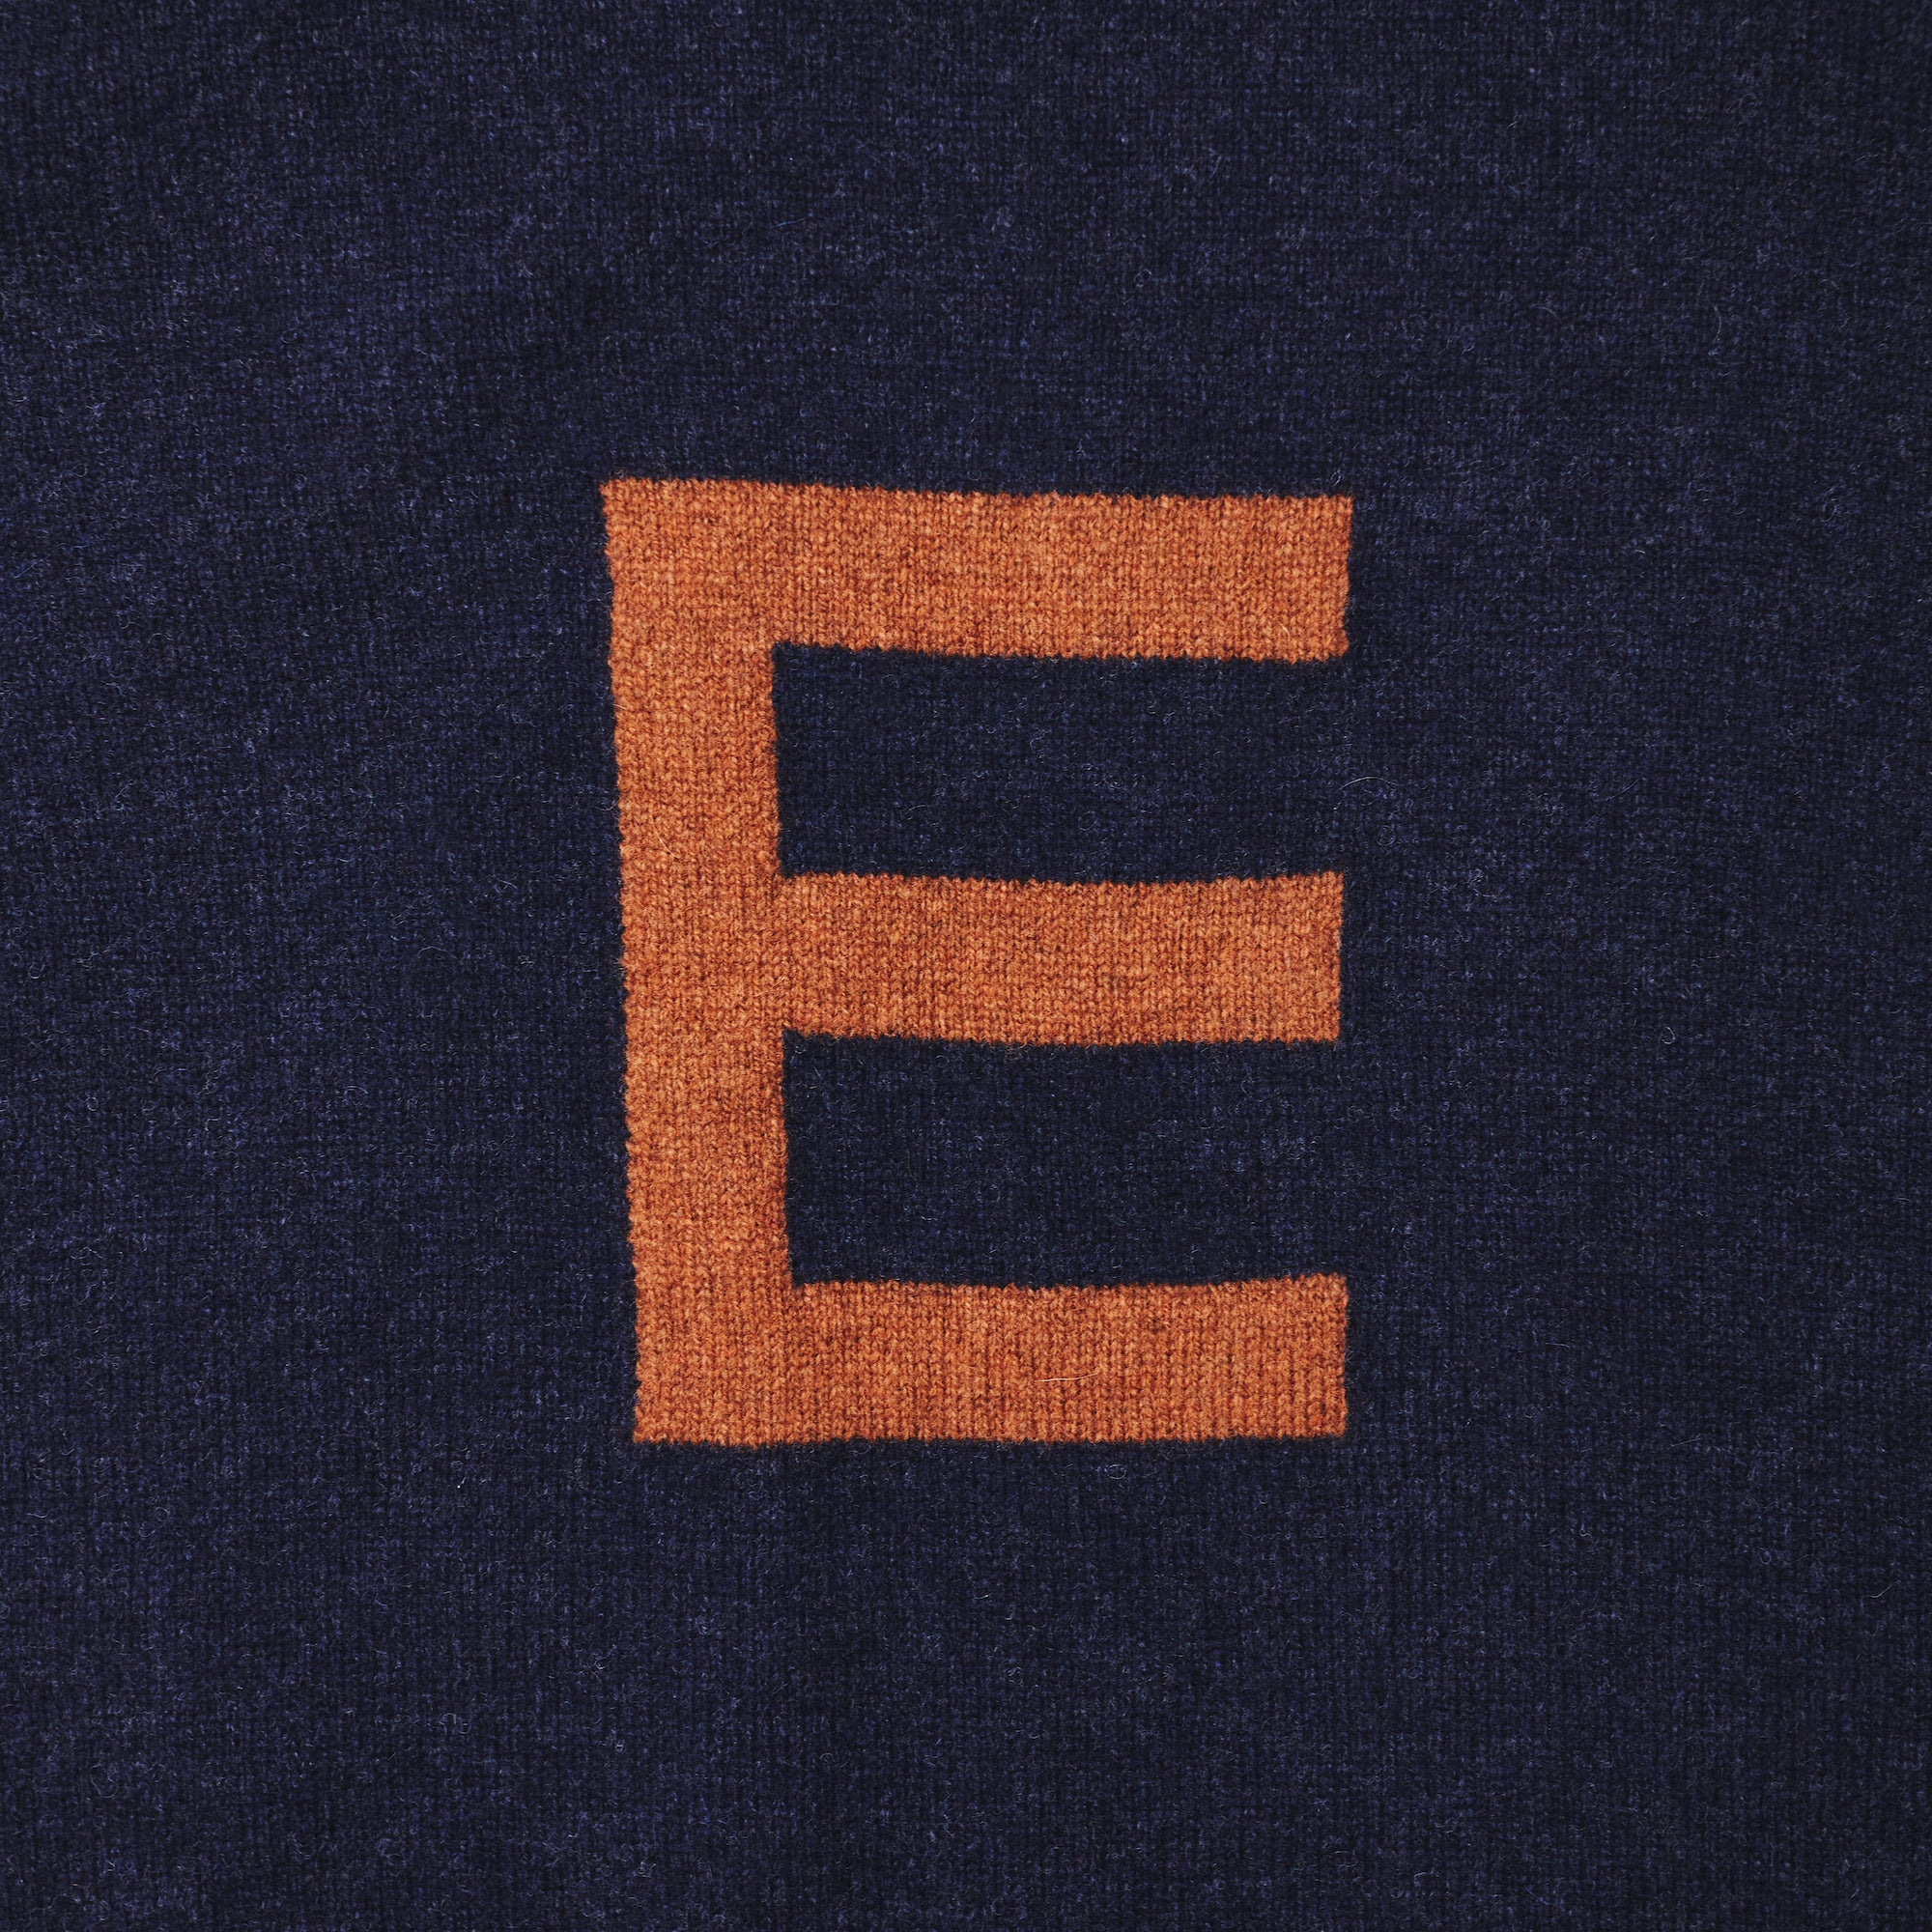 Alphabet E Knit